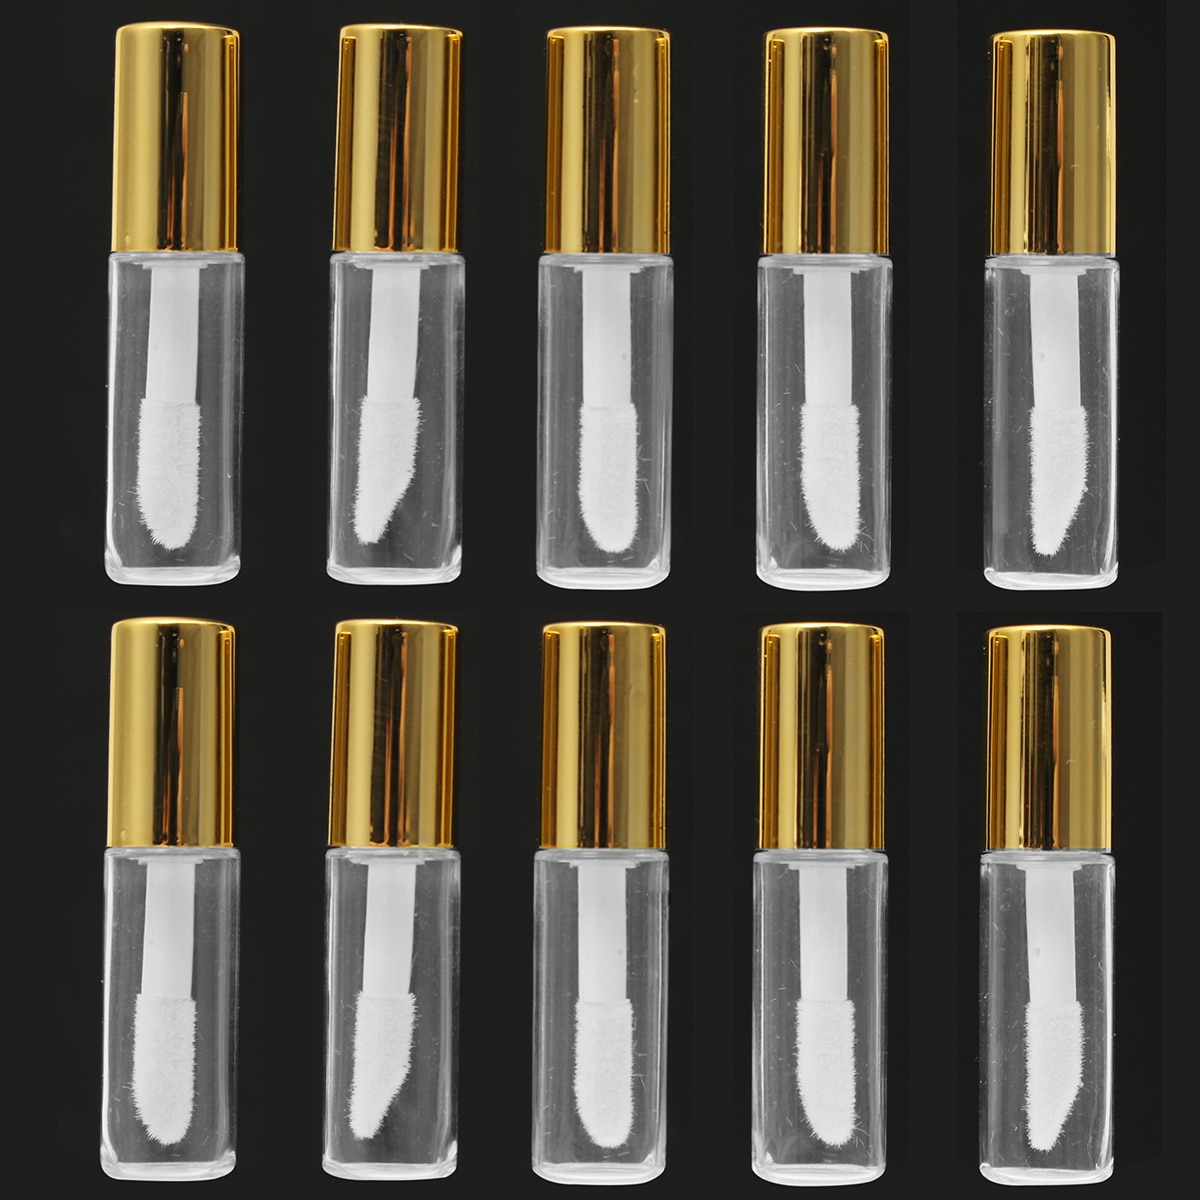 10 Stuks 1.2 ML Lege Transparante PE Lipgloss Tubes Plastic Lippenbalsem Buis Lippenstift Mini Sample Cosmetische Container Met Goud Cap